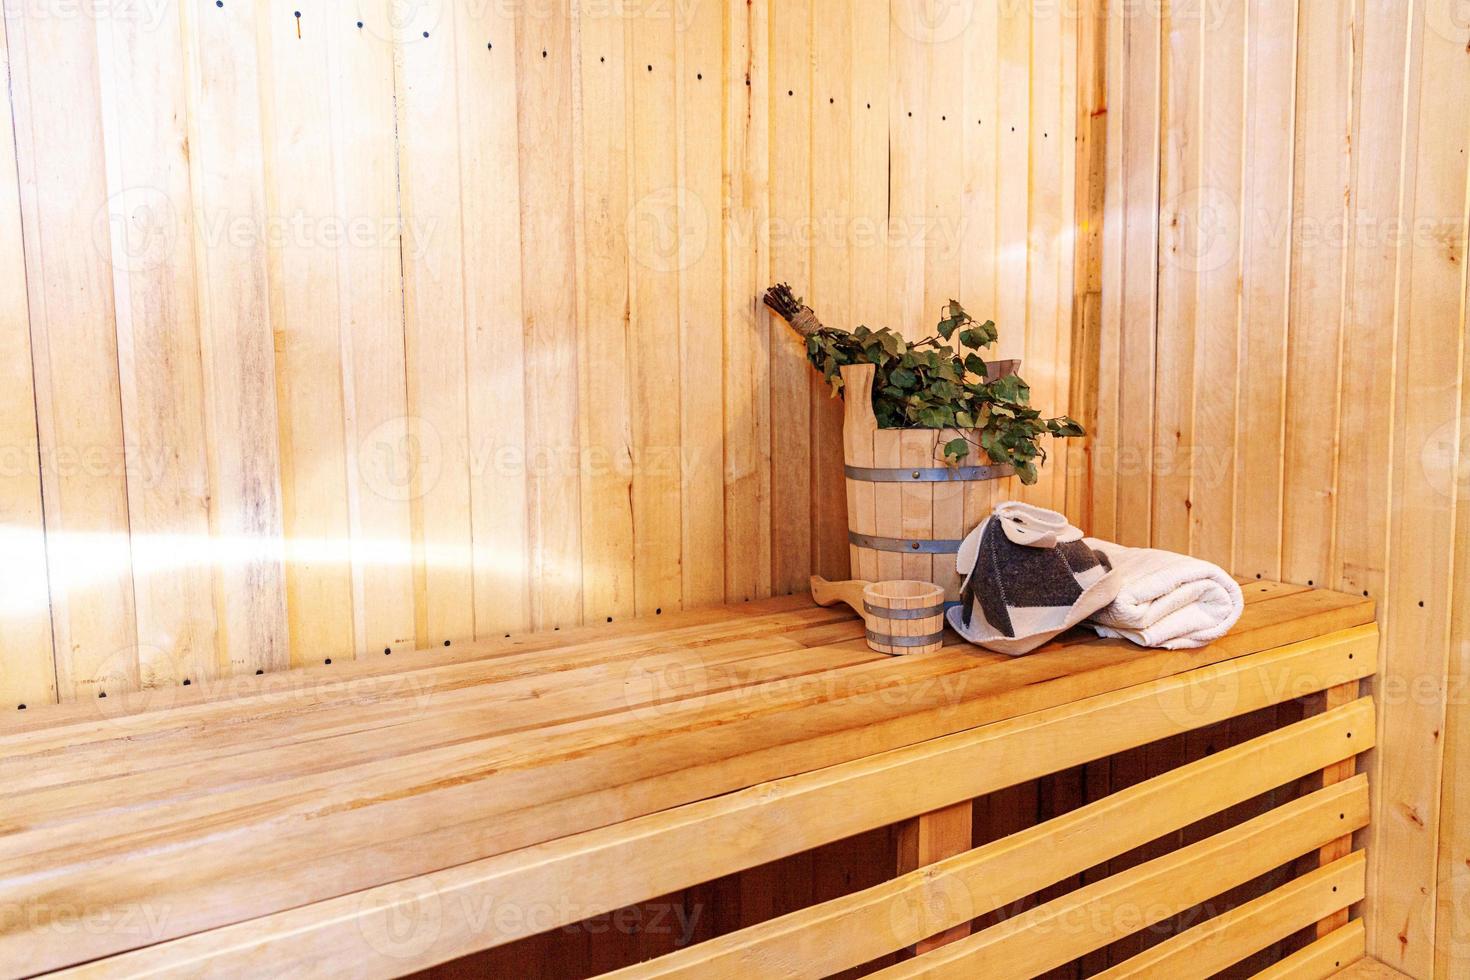 detalles interiores sauna finlandesa sala de vapor con accesorios de sauna  tradicionales palangana escoba de abedul